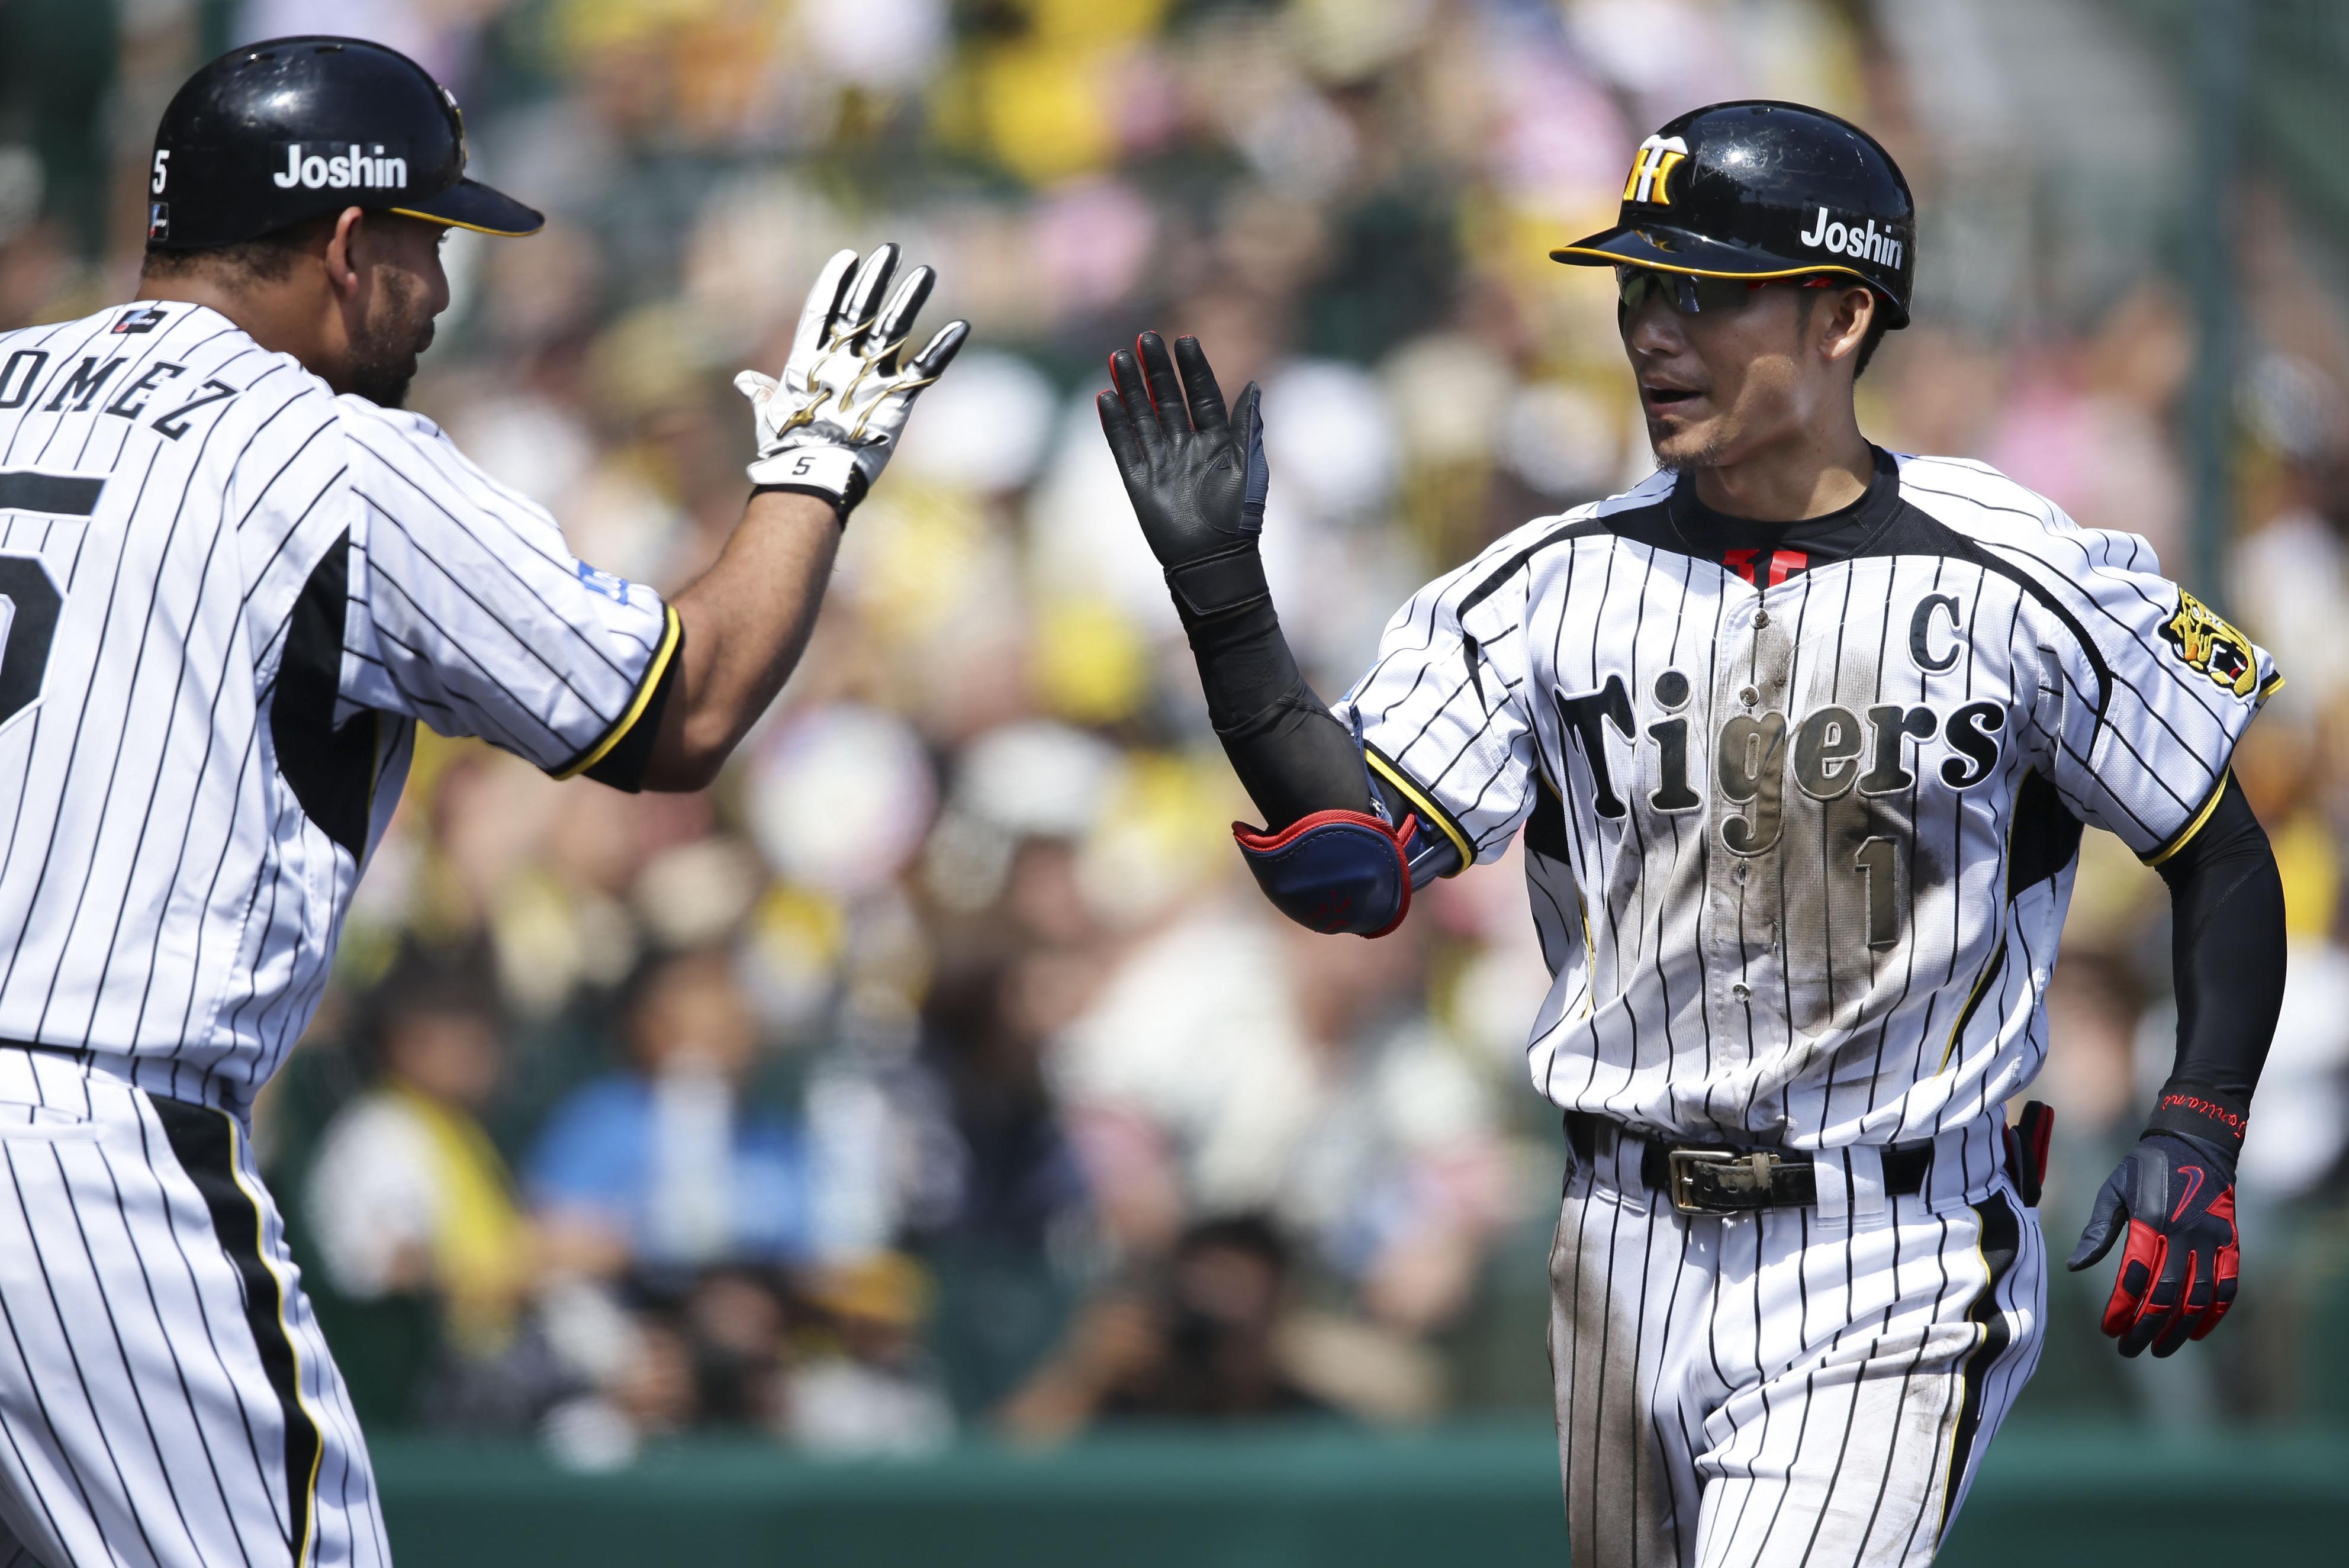 BASEBALL KING | 日本の野球を盛り上げる！阪神残留を決めた鳥谷が誇るリーグ屈指の出塁能力